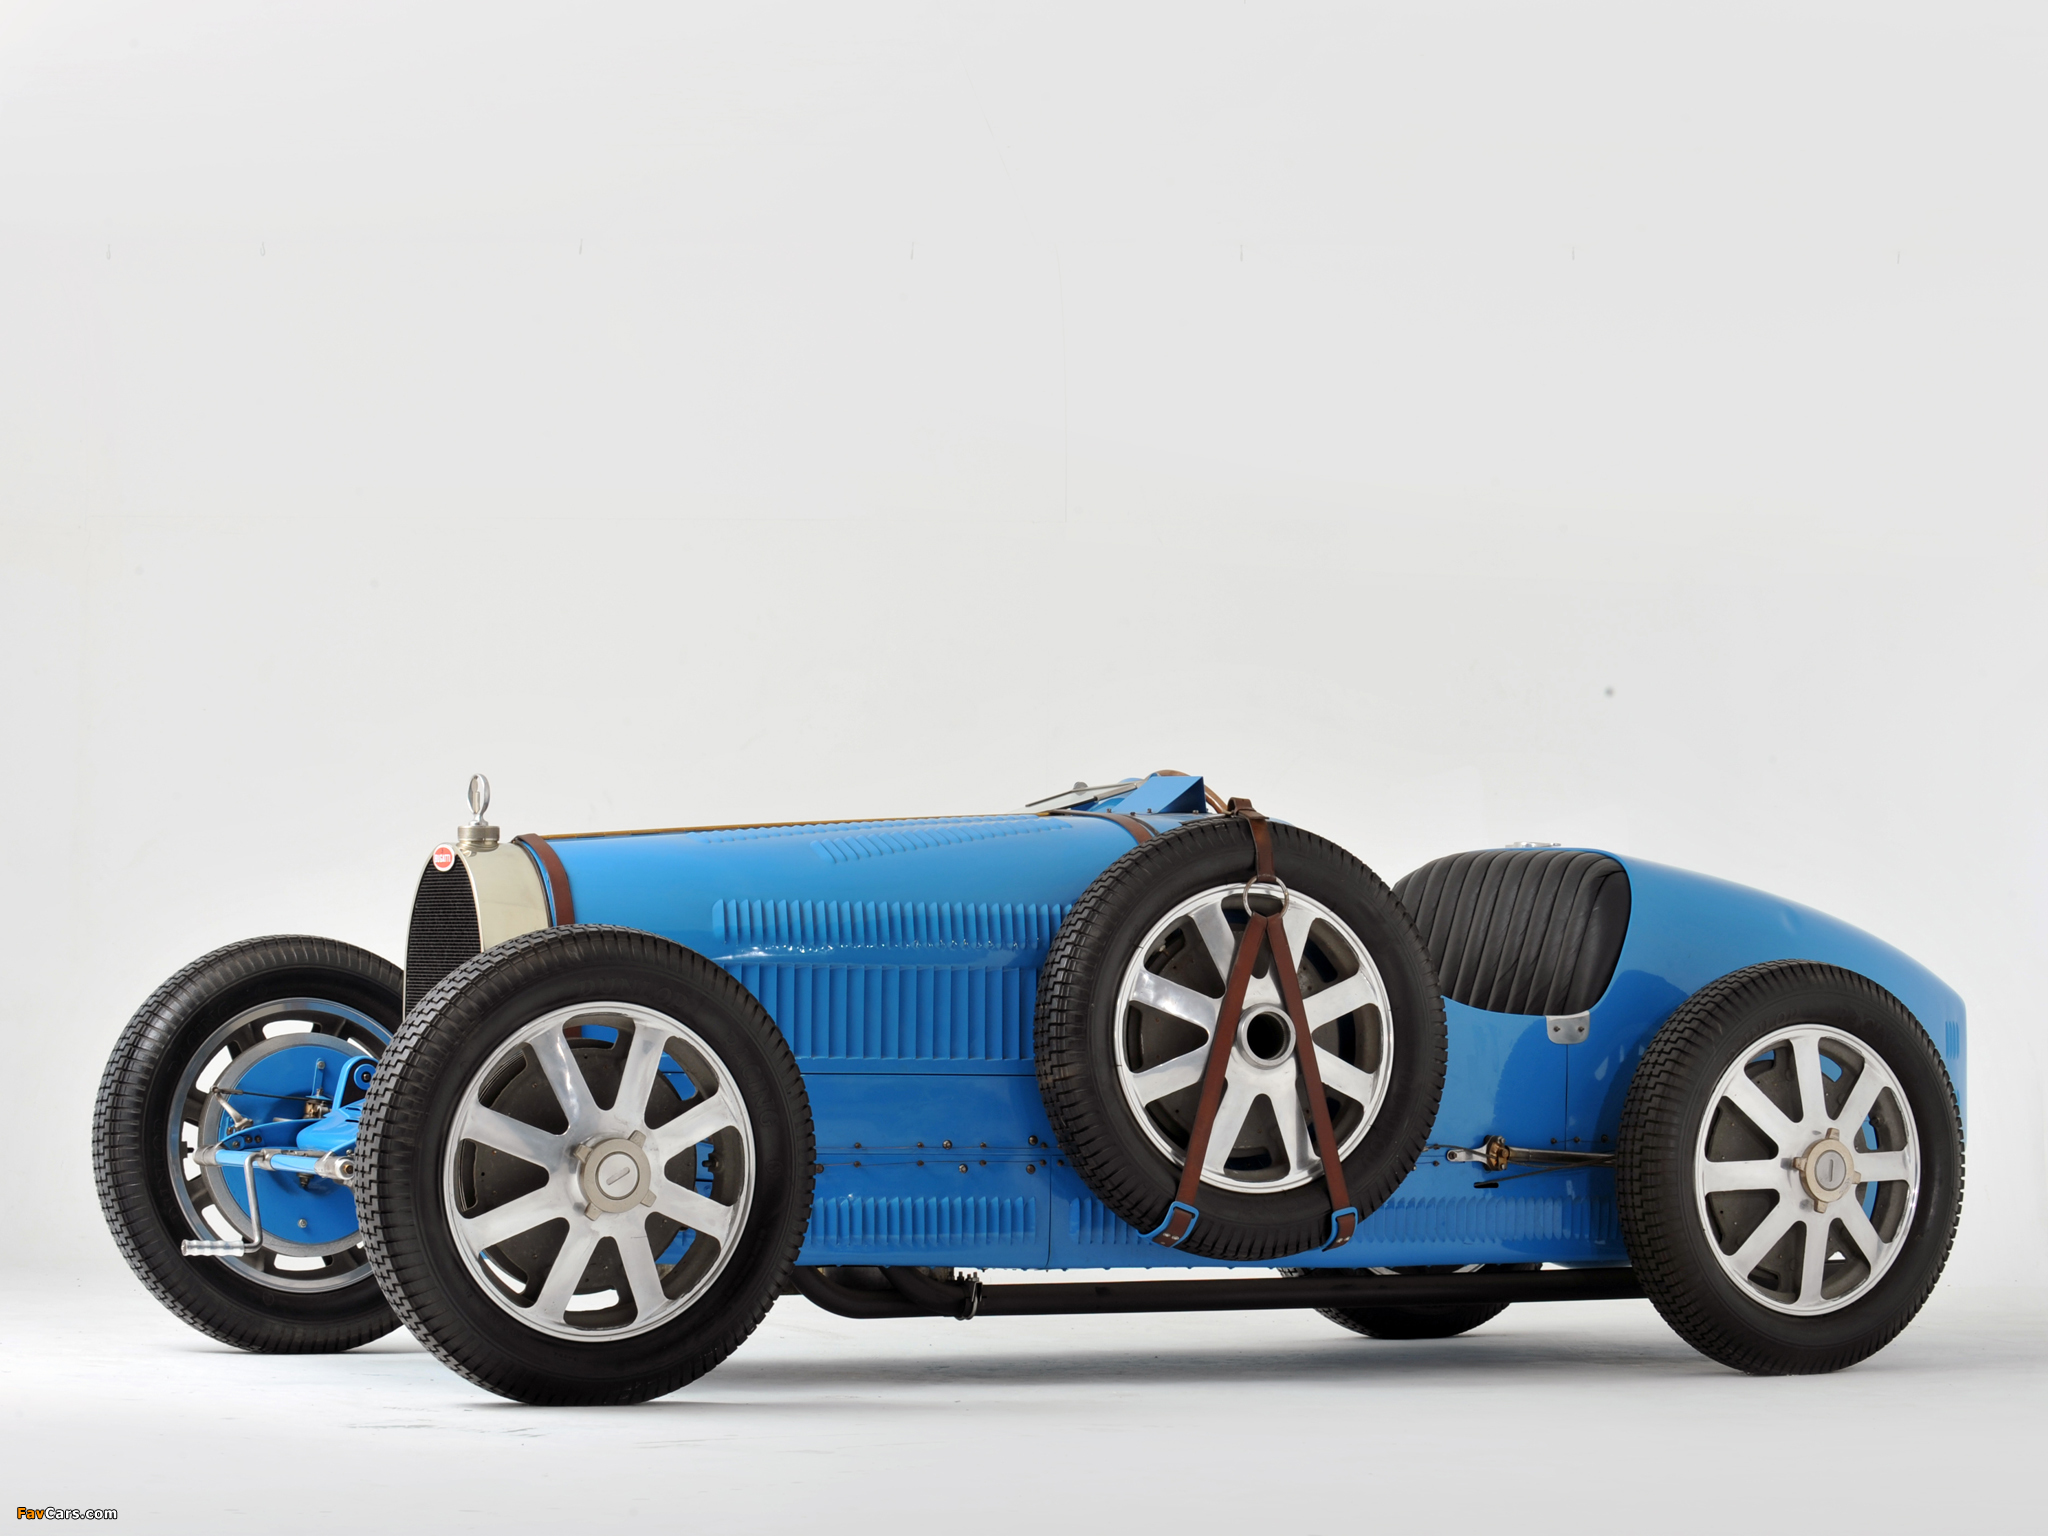 Bugatti 35. Bugatti Type 35b Grand prix (1925). Bugatti Type 35. Bugatti Type 35 Grand prix. Bugatti Type 35 (1924-30).